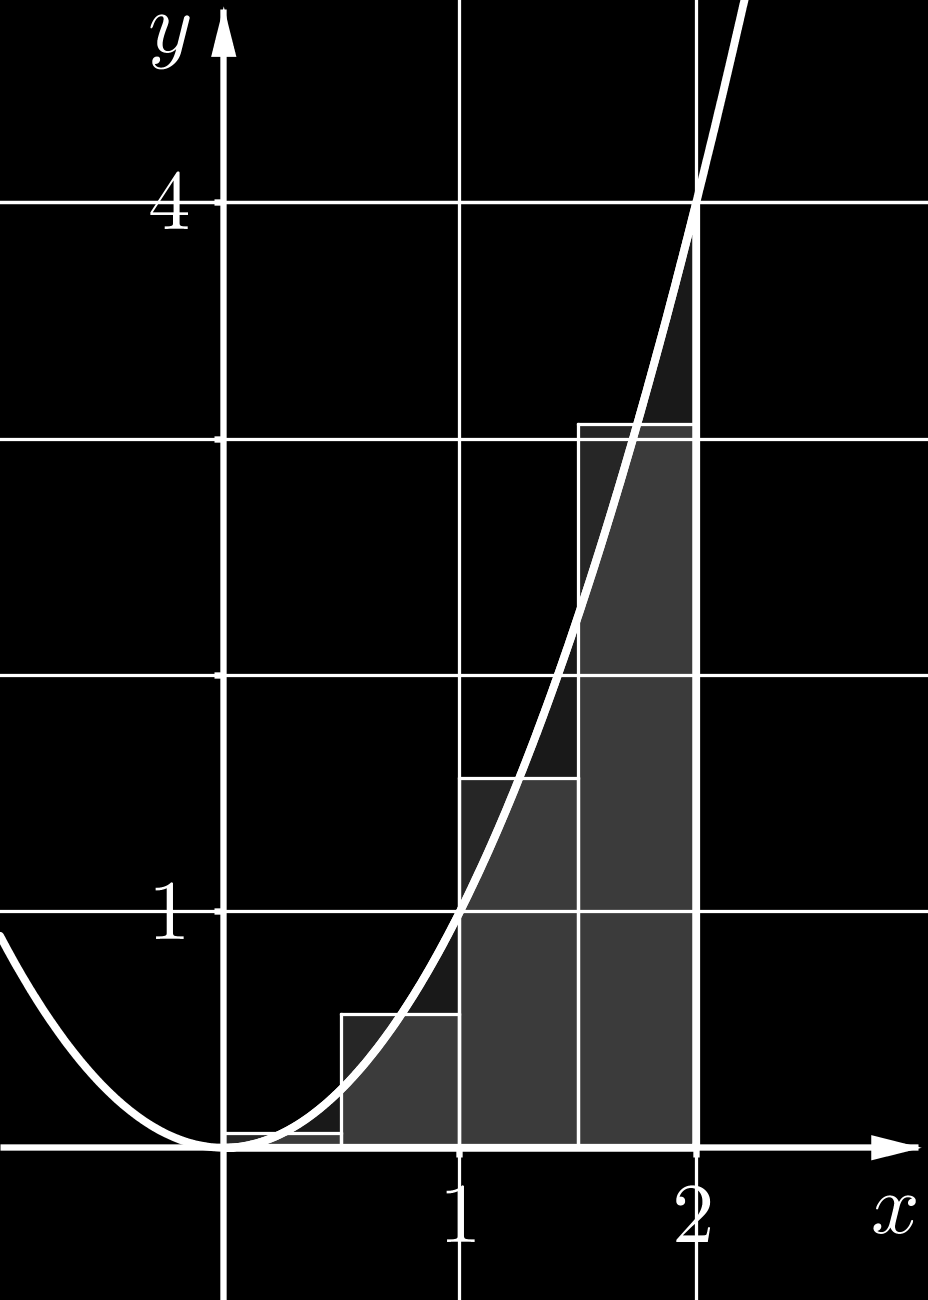 Esimerkki. Olkoon f(x) = x 2. Tarkastellaan aluetta, jota rajoittavat käyrä y = f(x), x-akseli sekä suorat x = 0 ja x = 2. Lasketaan alueen pinta-alalle A likiarvo käyttämällä välisummaa.